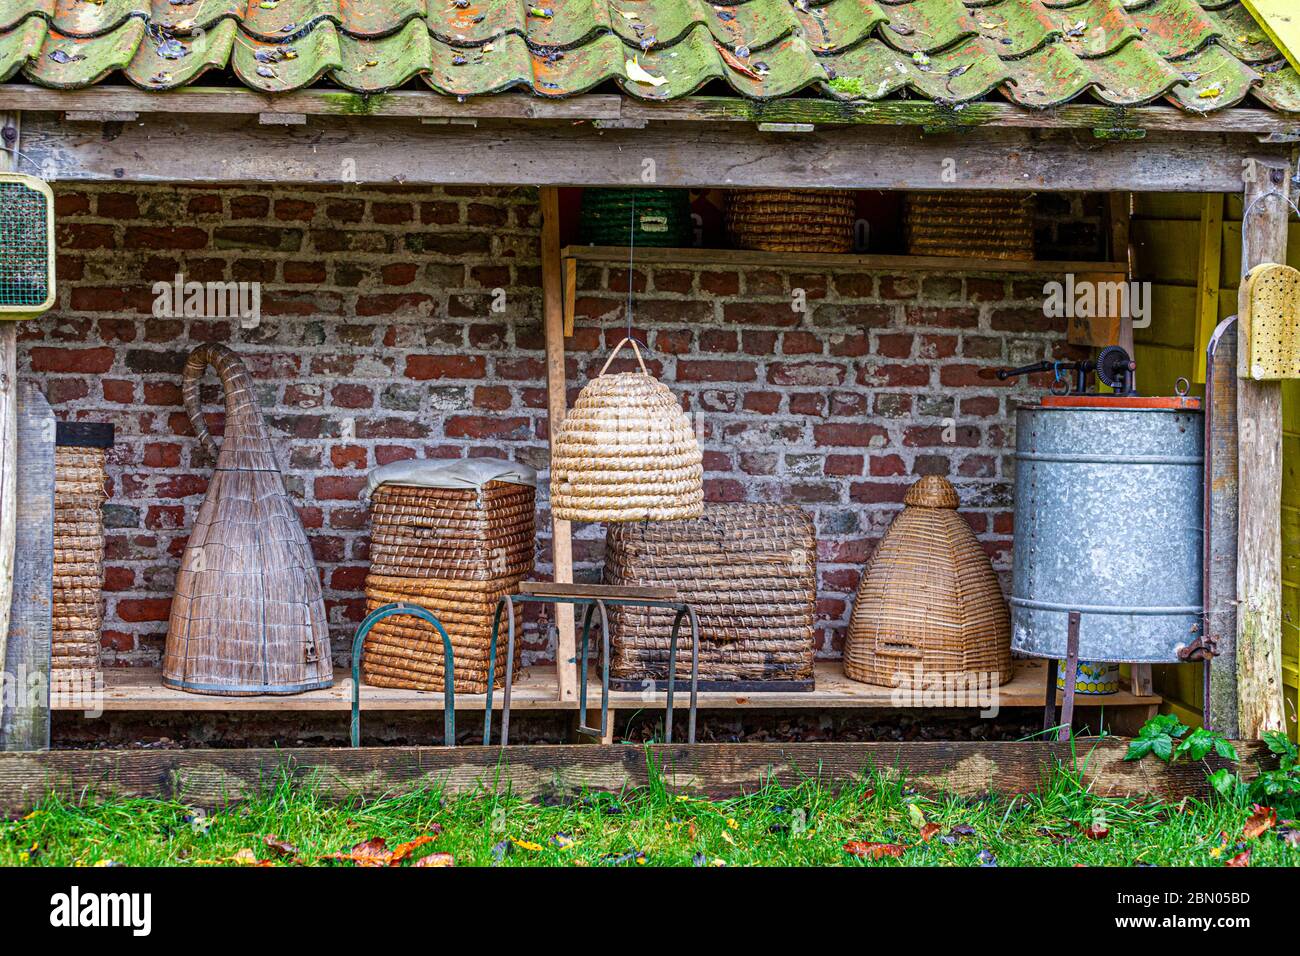 Traditional Beekeeper Equipment in Grijpskerke, Netherlands Stock Photo